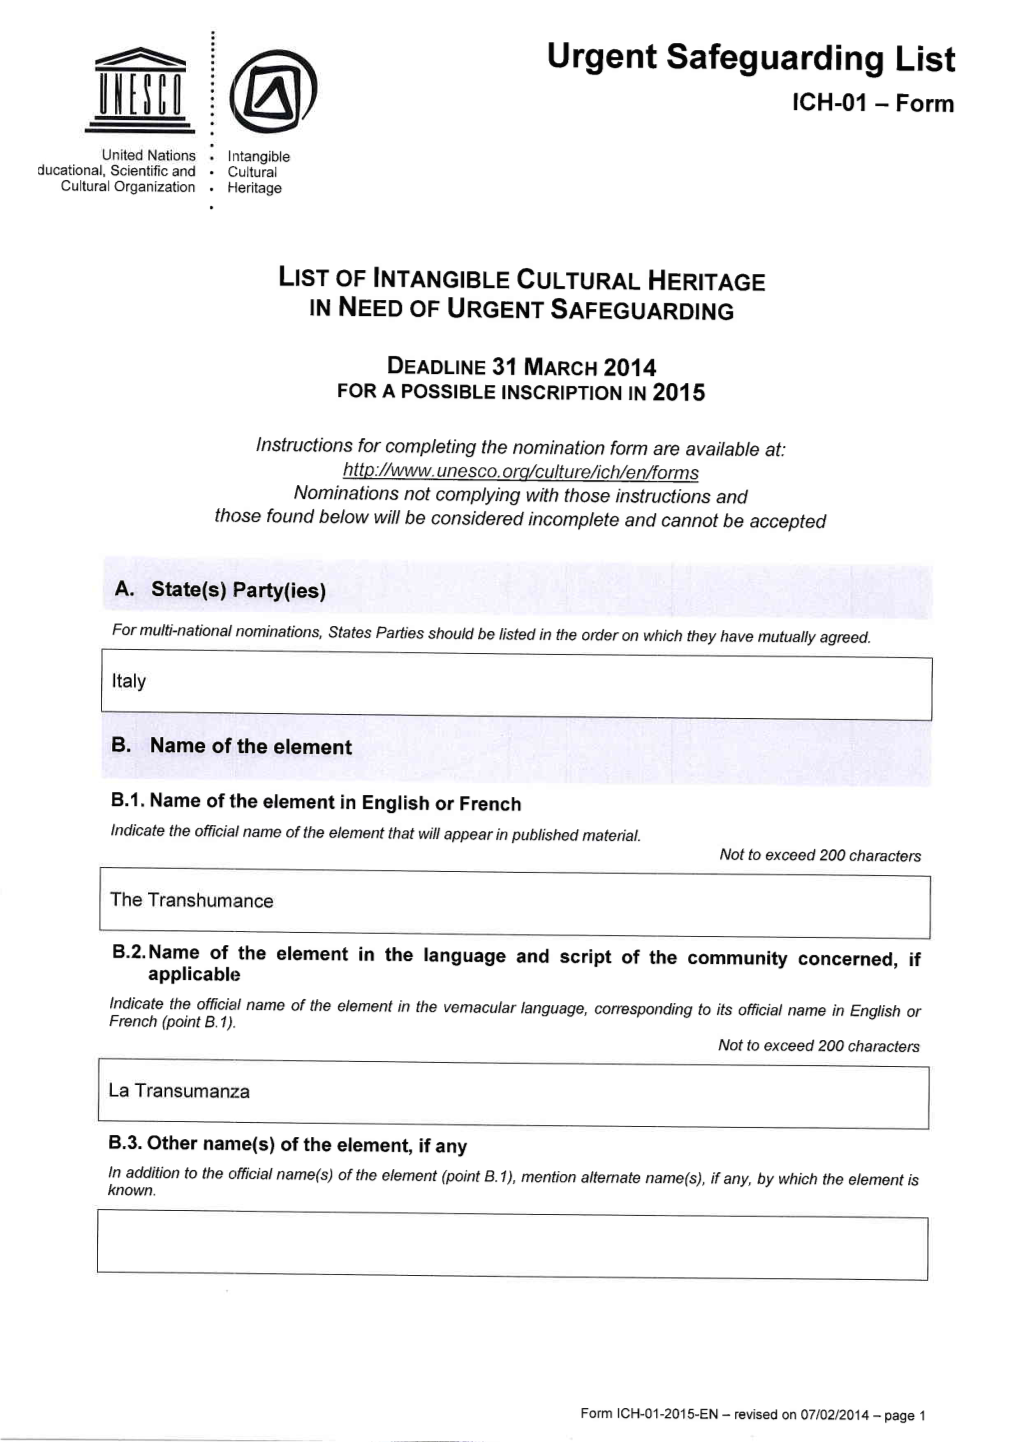 Urgent Safeguarding List ICH-01 - Form